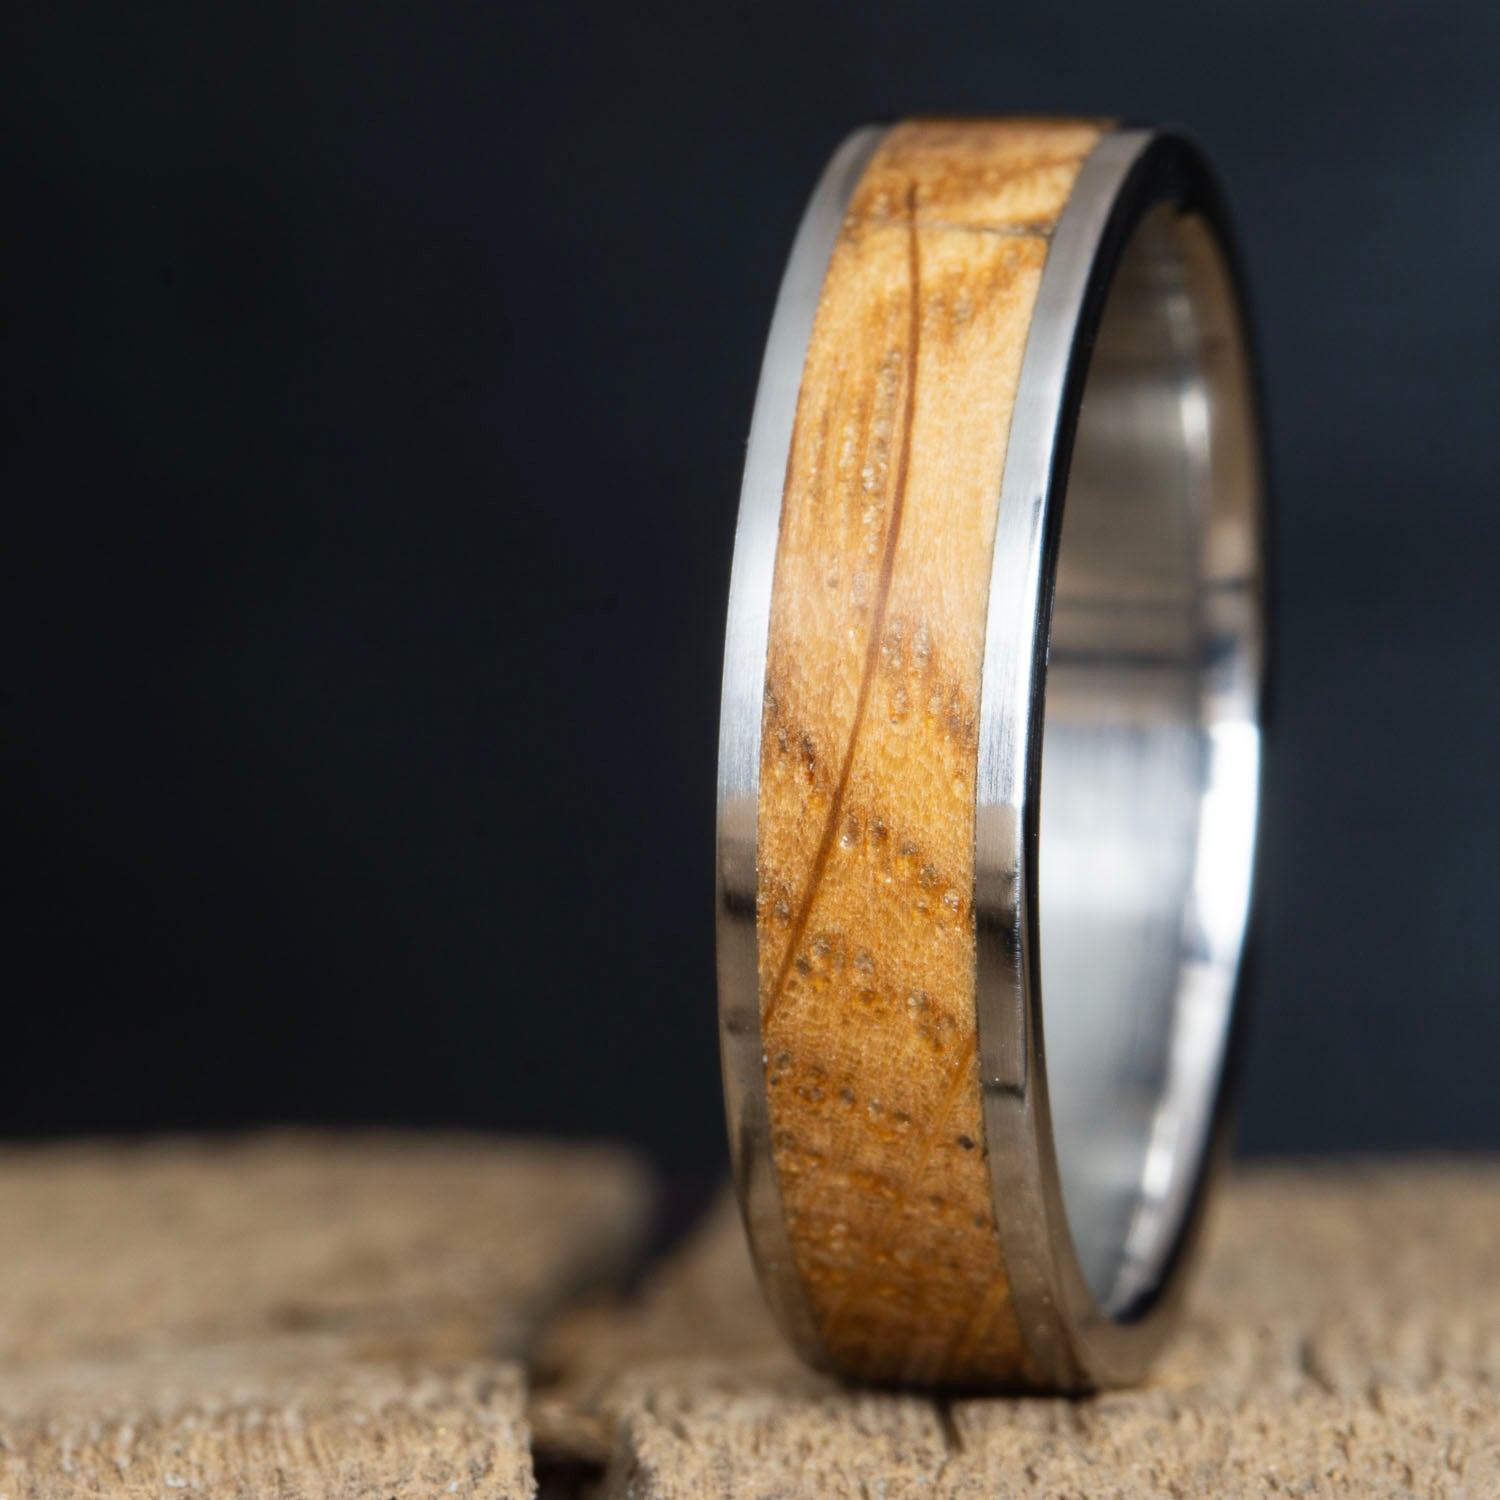 Whiskey barrel inlay titanium ring